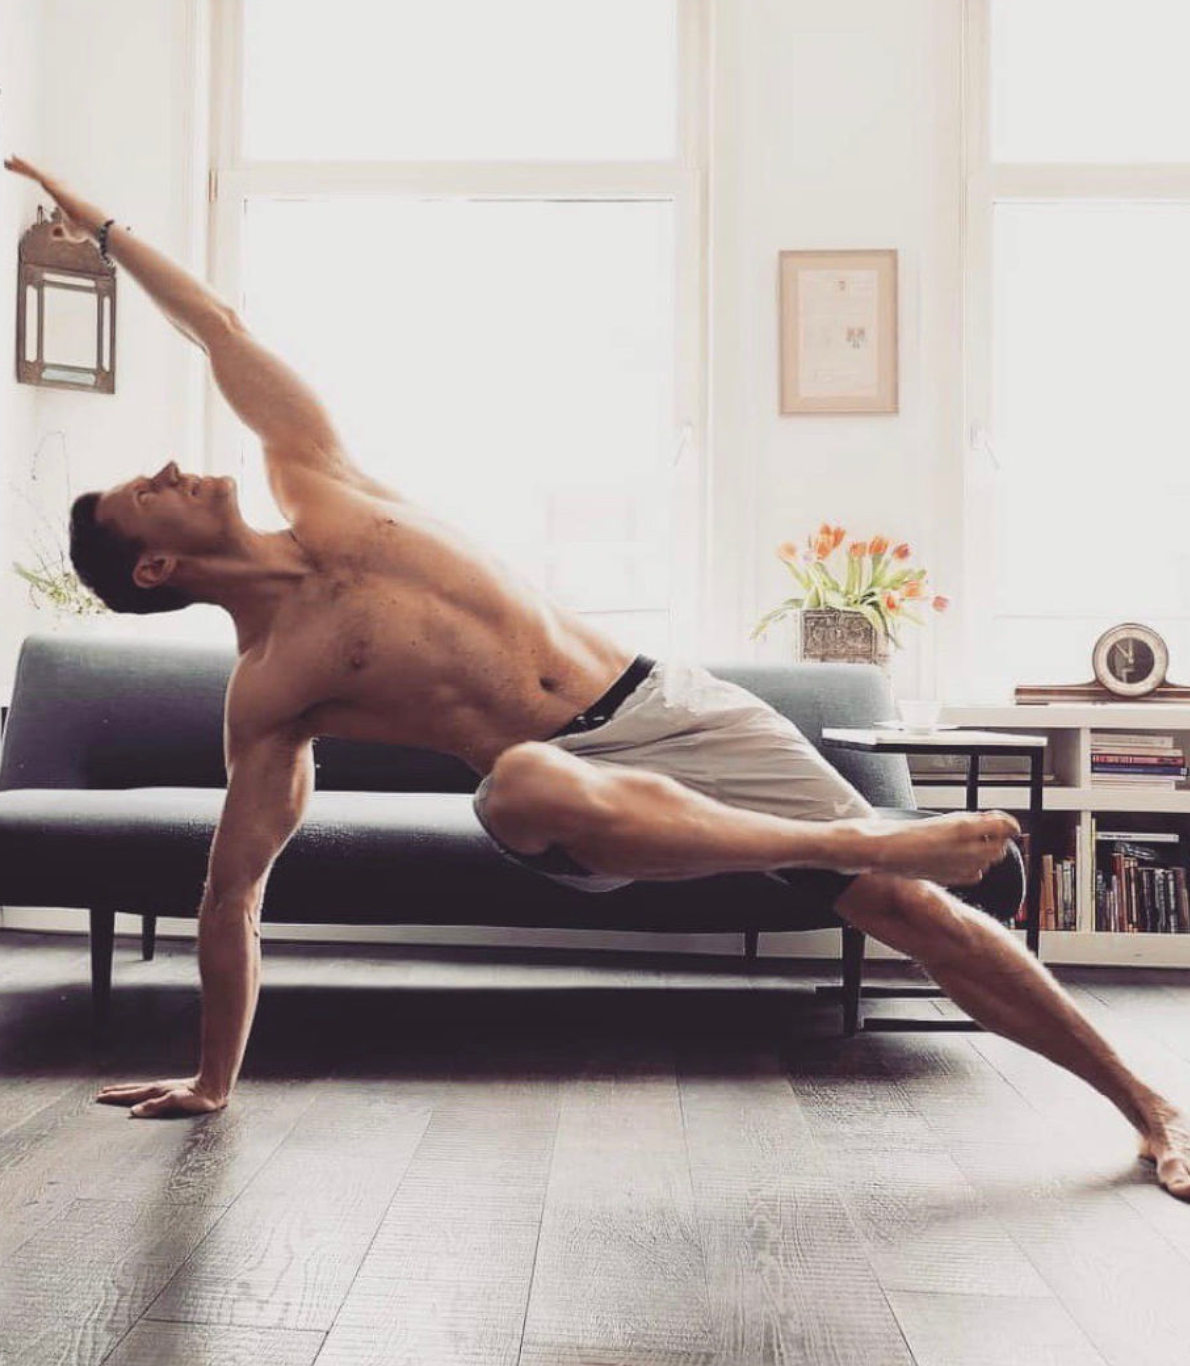 Miki Molnar, na sua sala, vestido com uns calções de desporto, faz um exercício de flexibilidade e equilíbrio, apoiando-se apenas com a mão direita e a perna a esquerda.